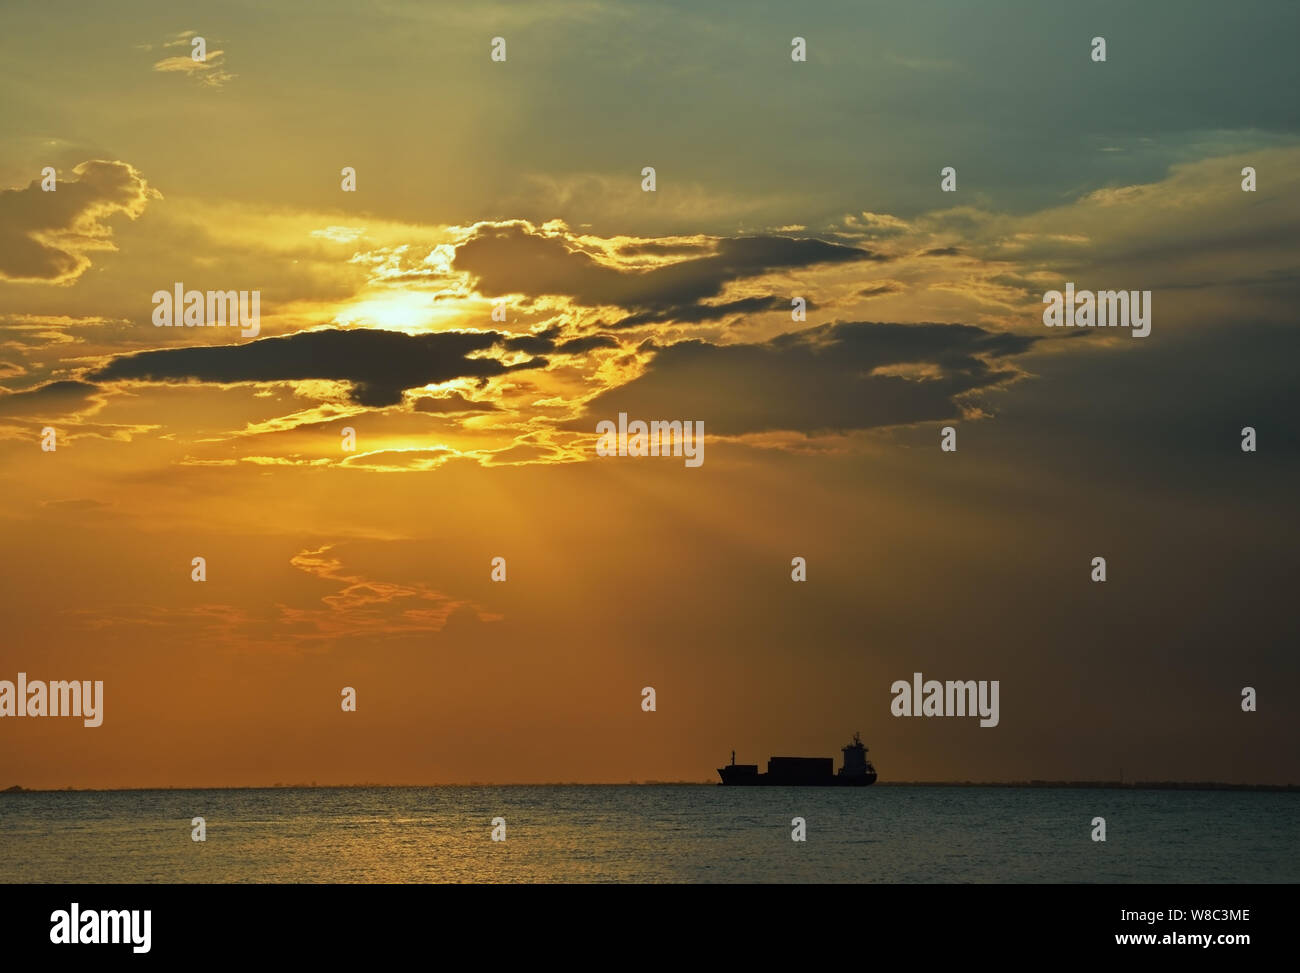 Silhouette d'un cargo au coucher du soleil avec ciel dramatique Banque D'Images